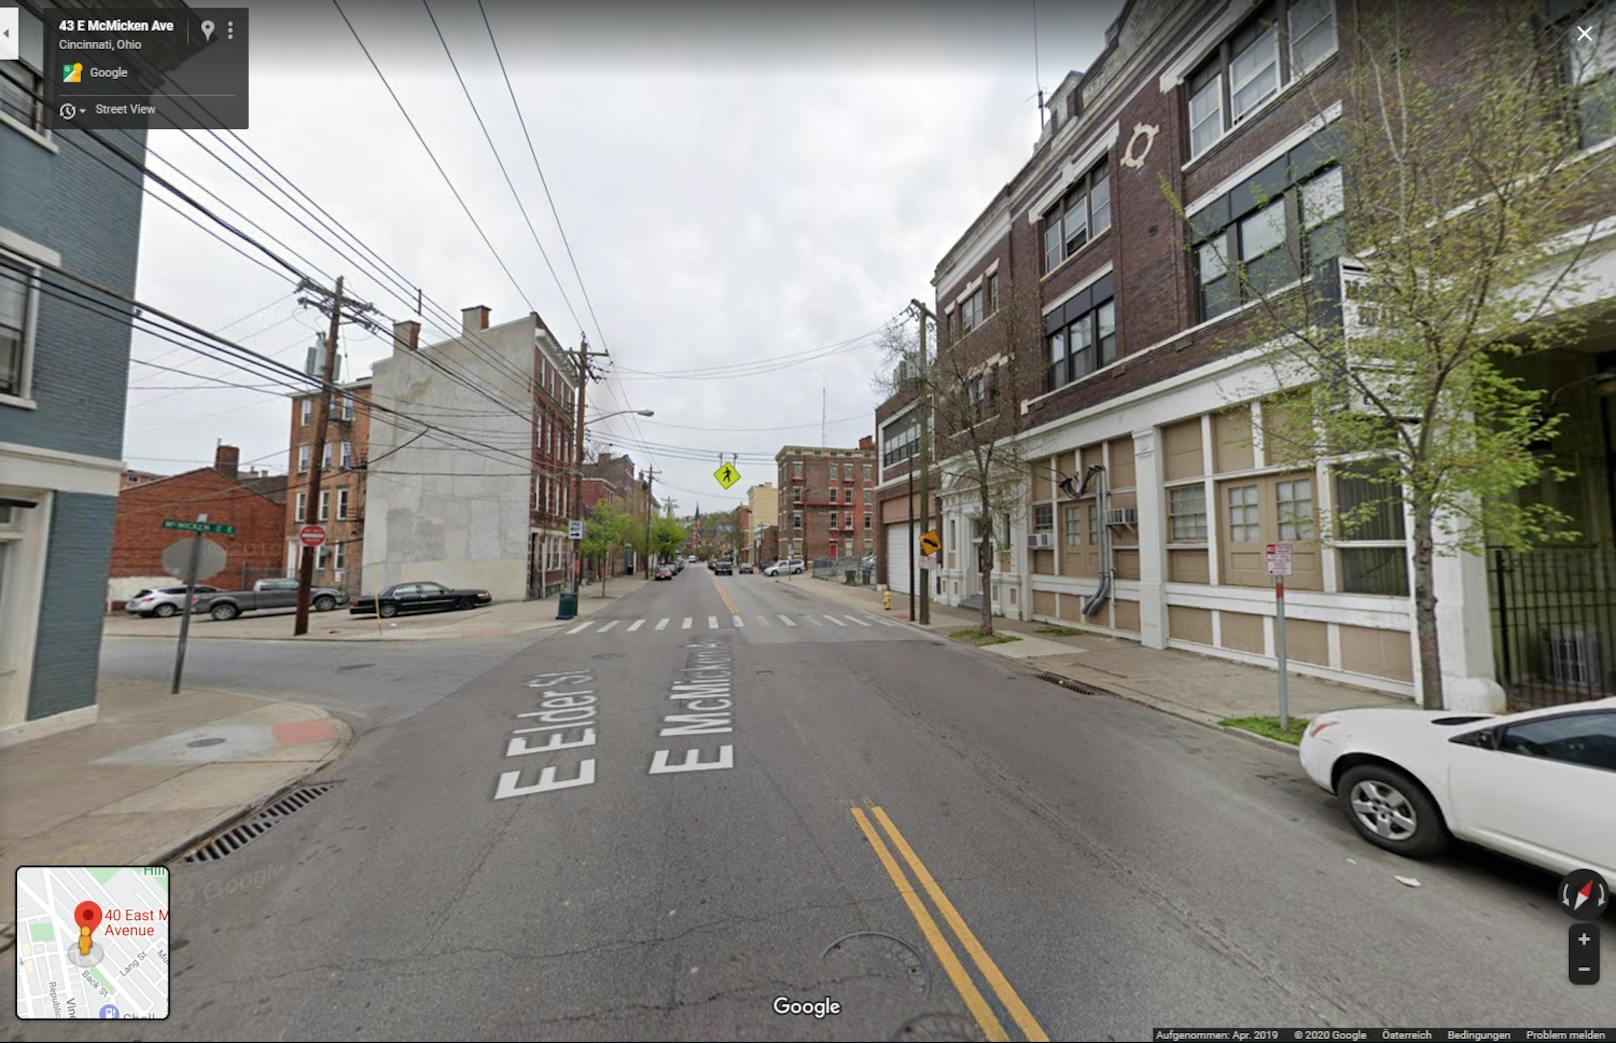 An der E. McMicken Avenue 40 ereignete in der US-Stadt Cincinnati ereignete sich eine von insgesamt drei Schiessereien.